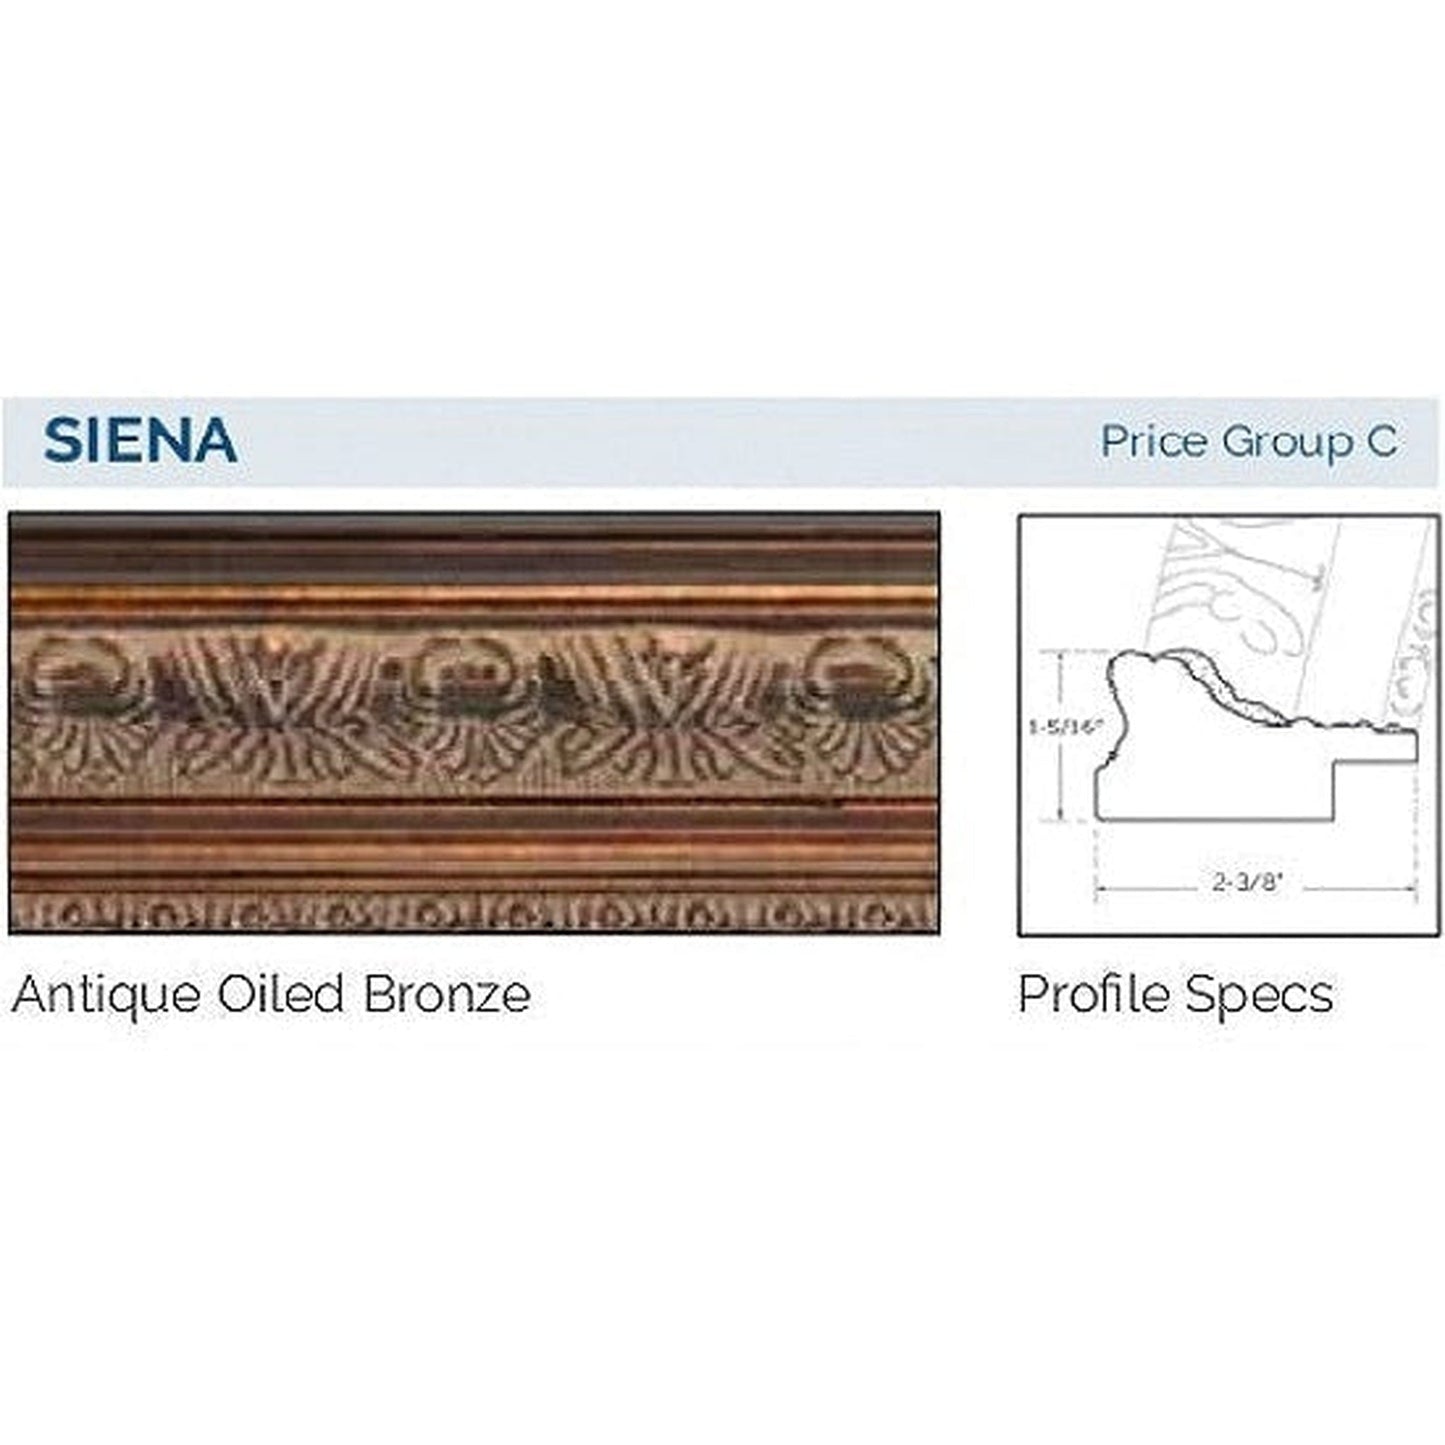 Afina Signature 63" x 36" Siena Antique Oiled Bronze Recessed Four Door Medicine Cabinet With Beveled Edge Mirror